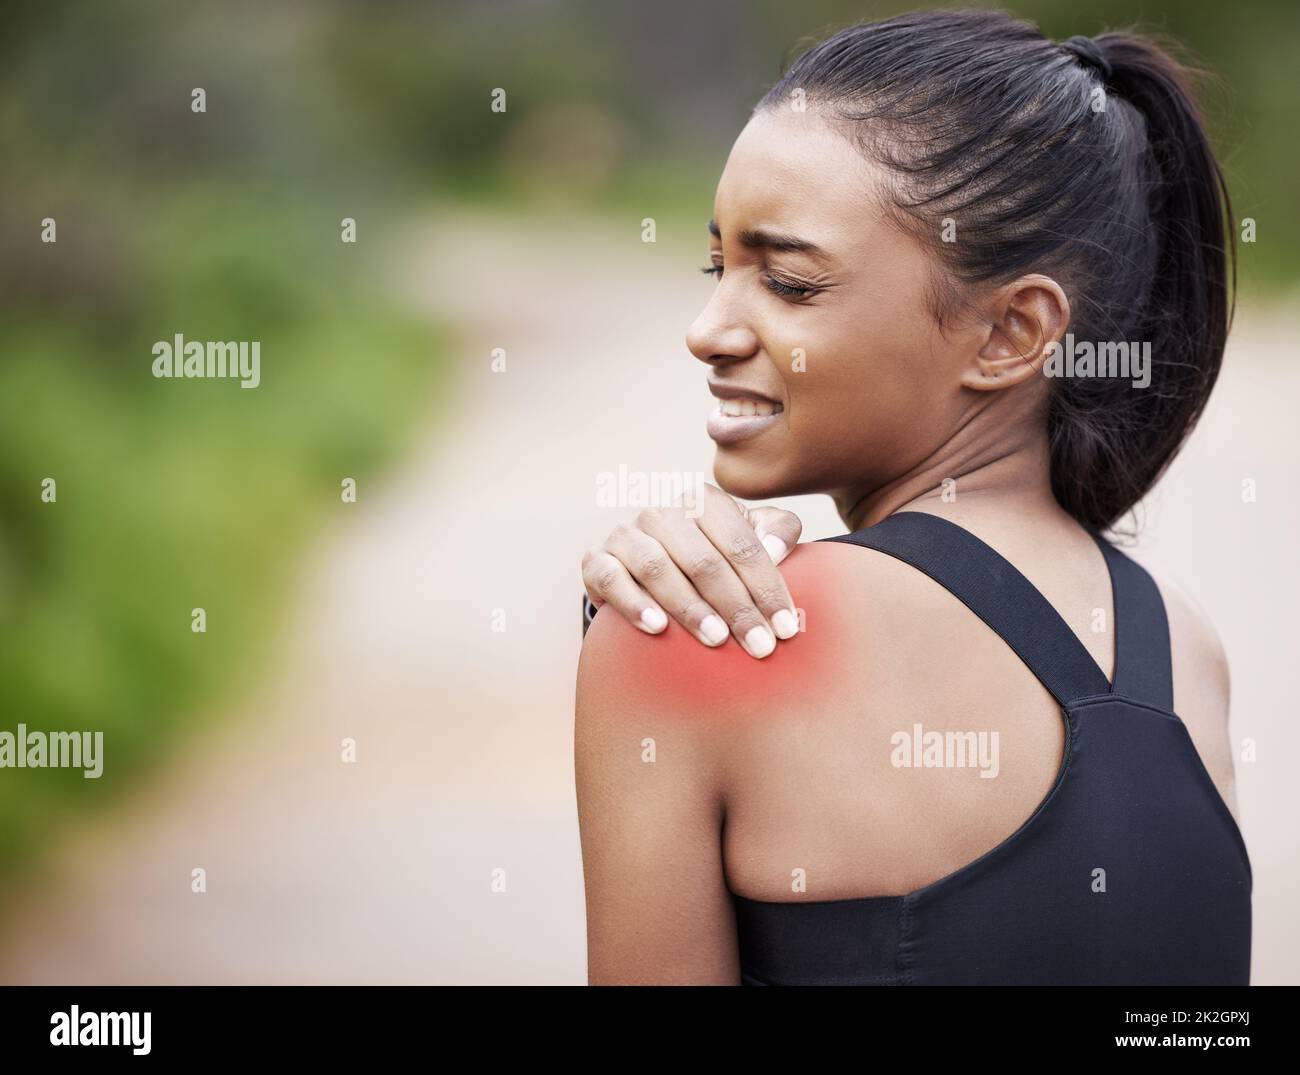 Ce muscle est tellement serré. Prise de vue d'une jeune femme sportive souffrant de douleurs aux épaules pendant l'exercice à l'extérieur. Banque D'Images